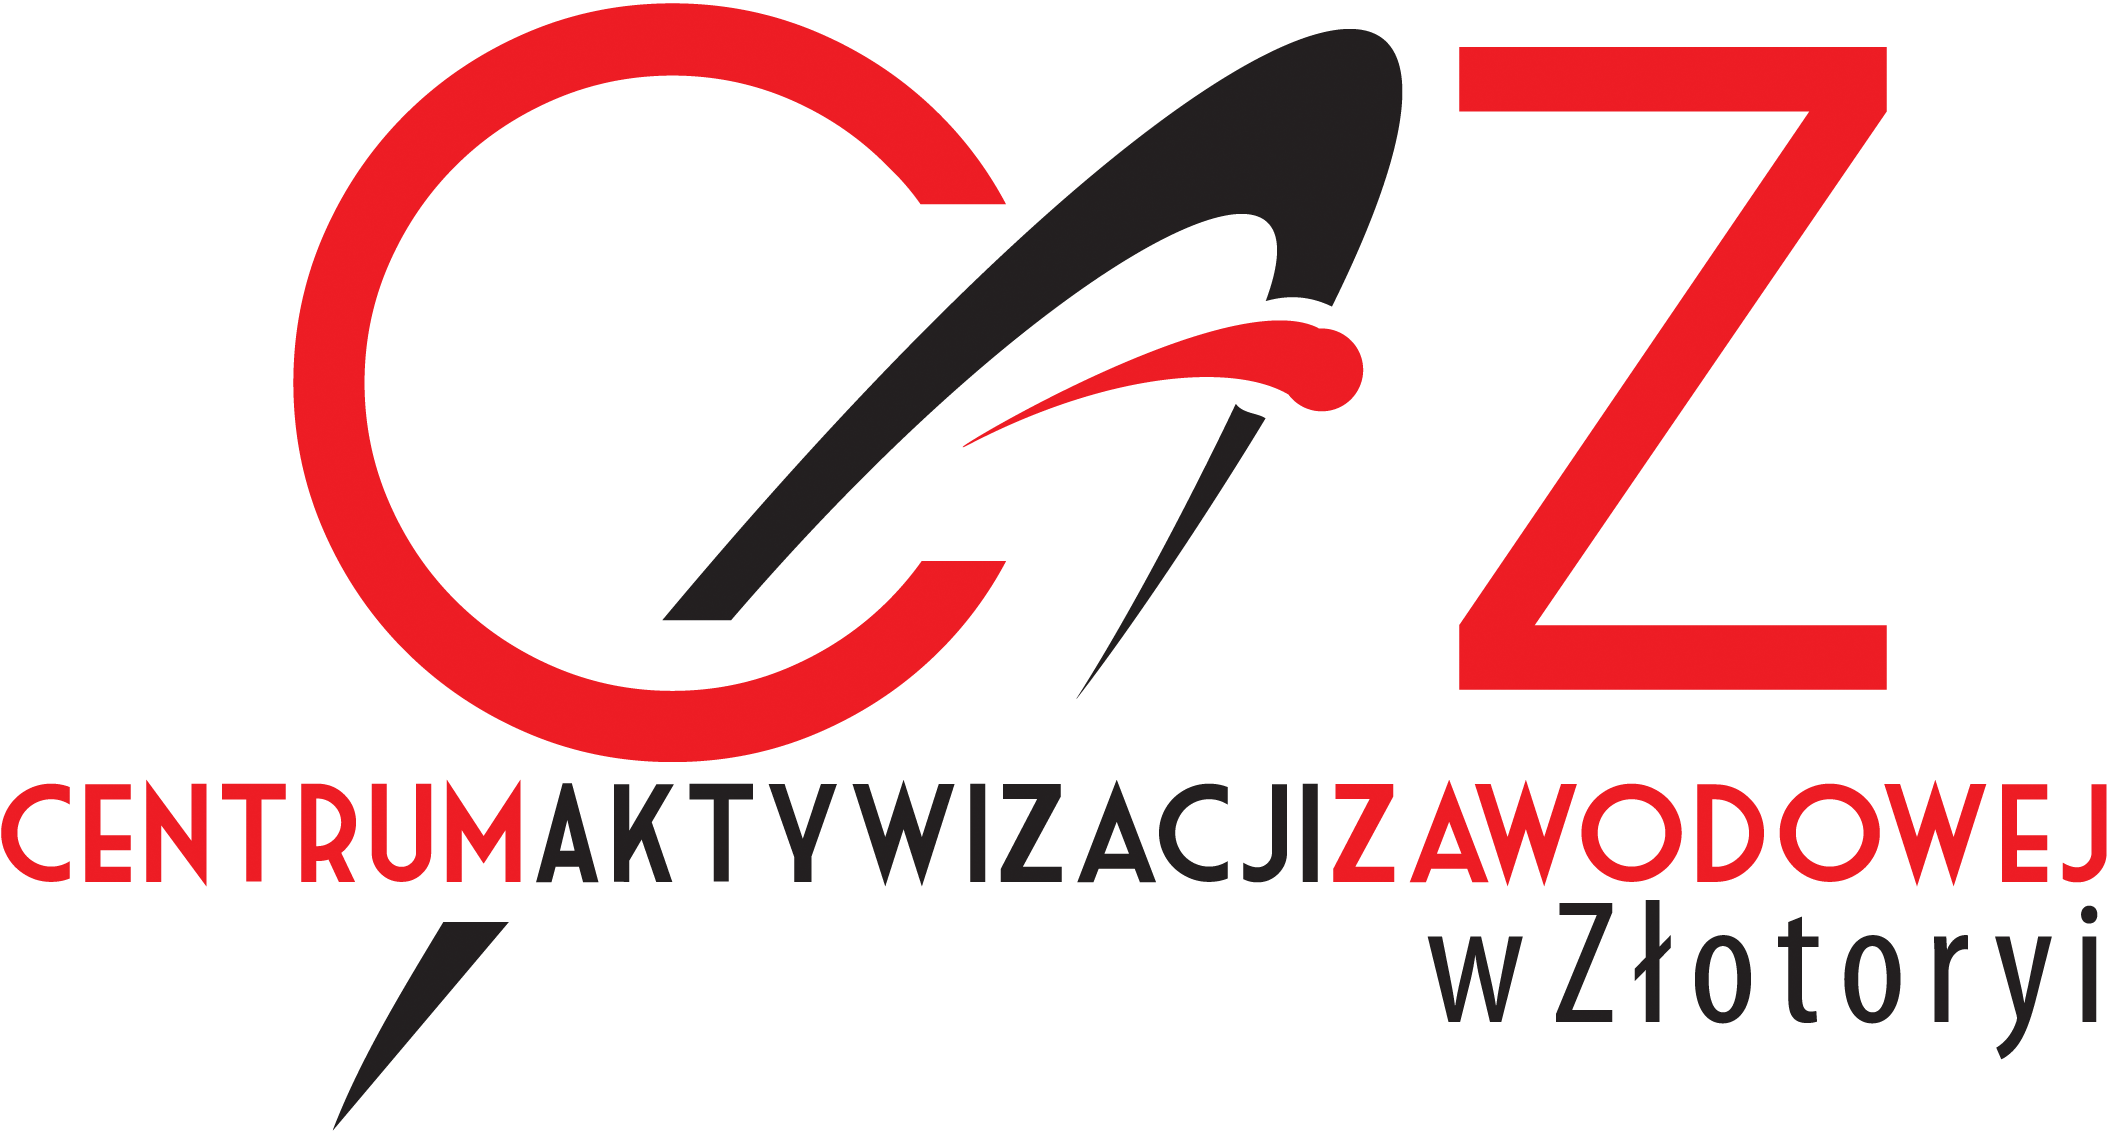 Logotyp CAZ czyli Centrum Aktywizacji Zawodowej w Złotoryi